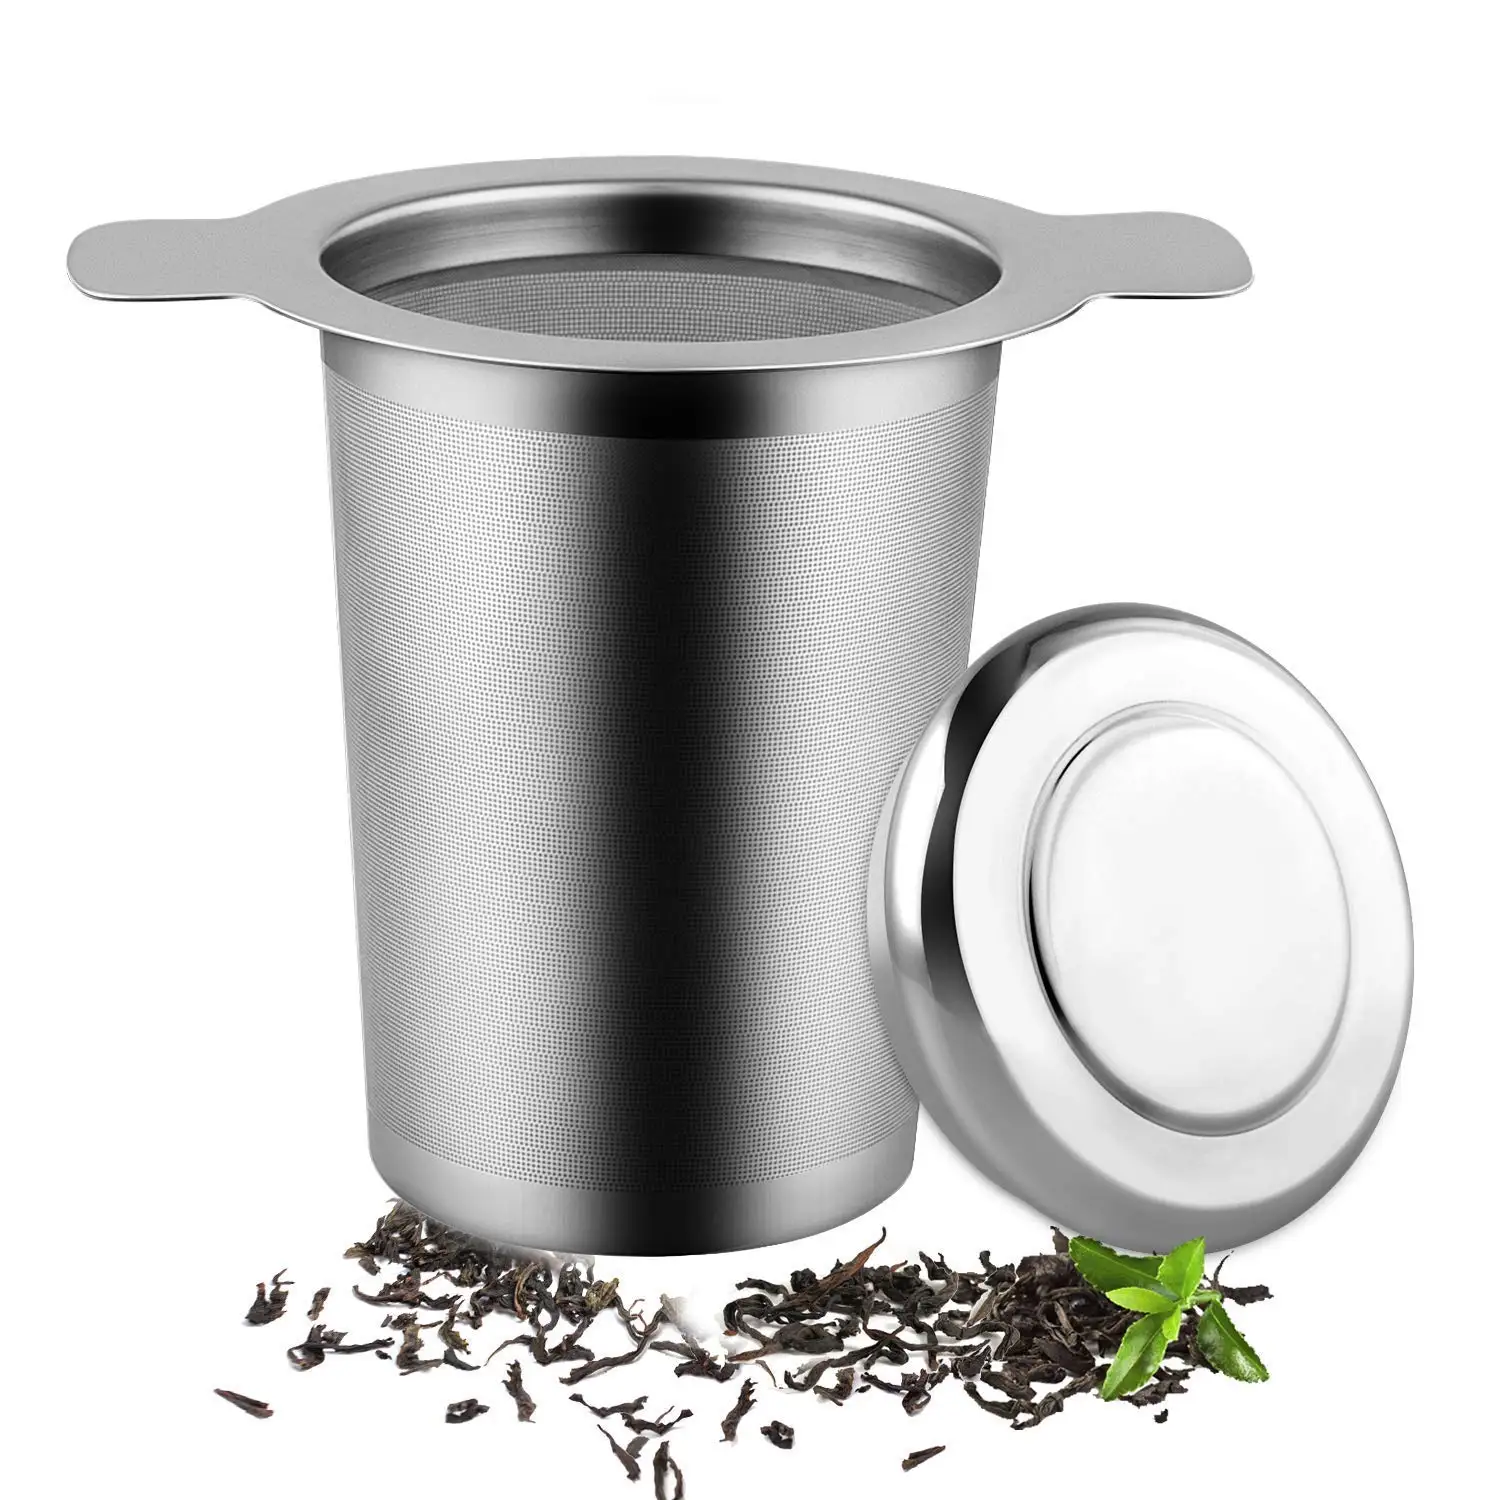 Многослойная сетка для заваривания чая, многоразовый фильтр для кофе-подходит для стандартных чашек, кружек, чайных горшков-Идеальный фильтр из нержавеющей стали для заваривания